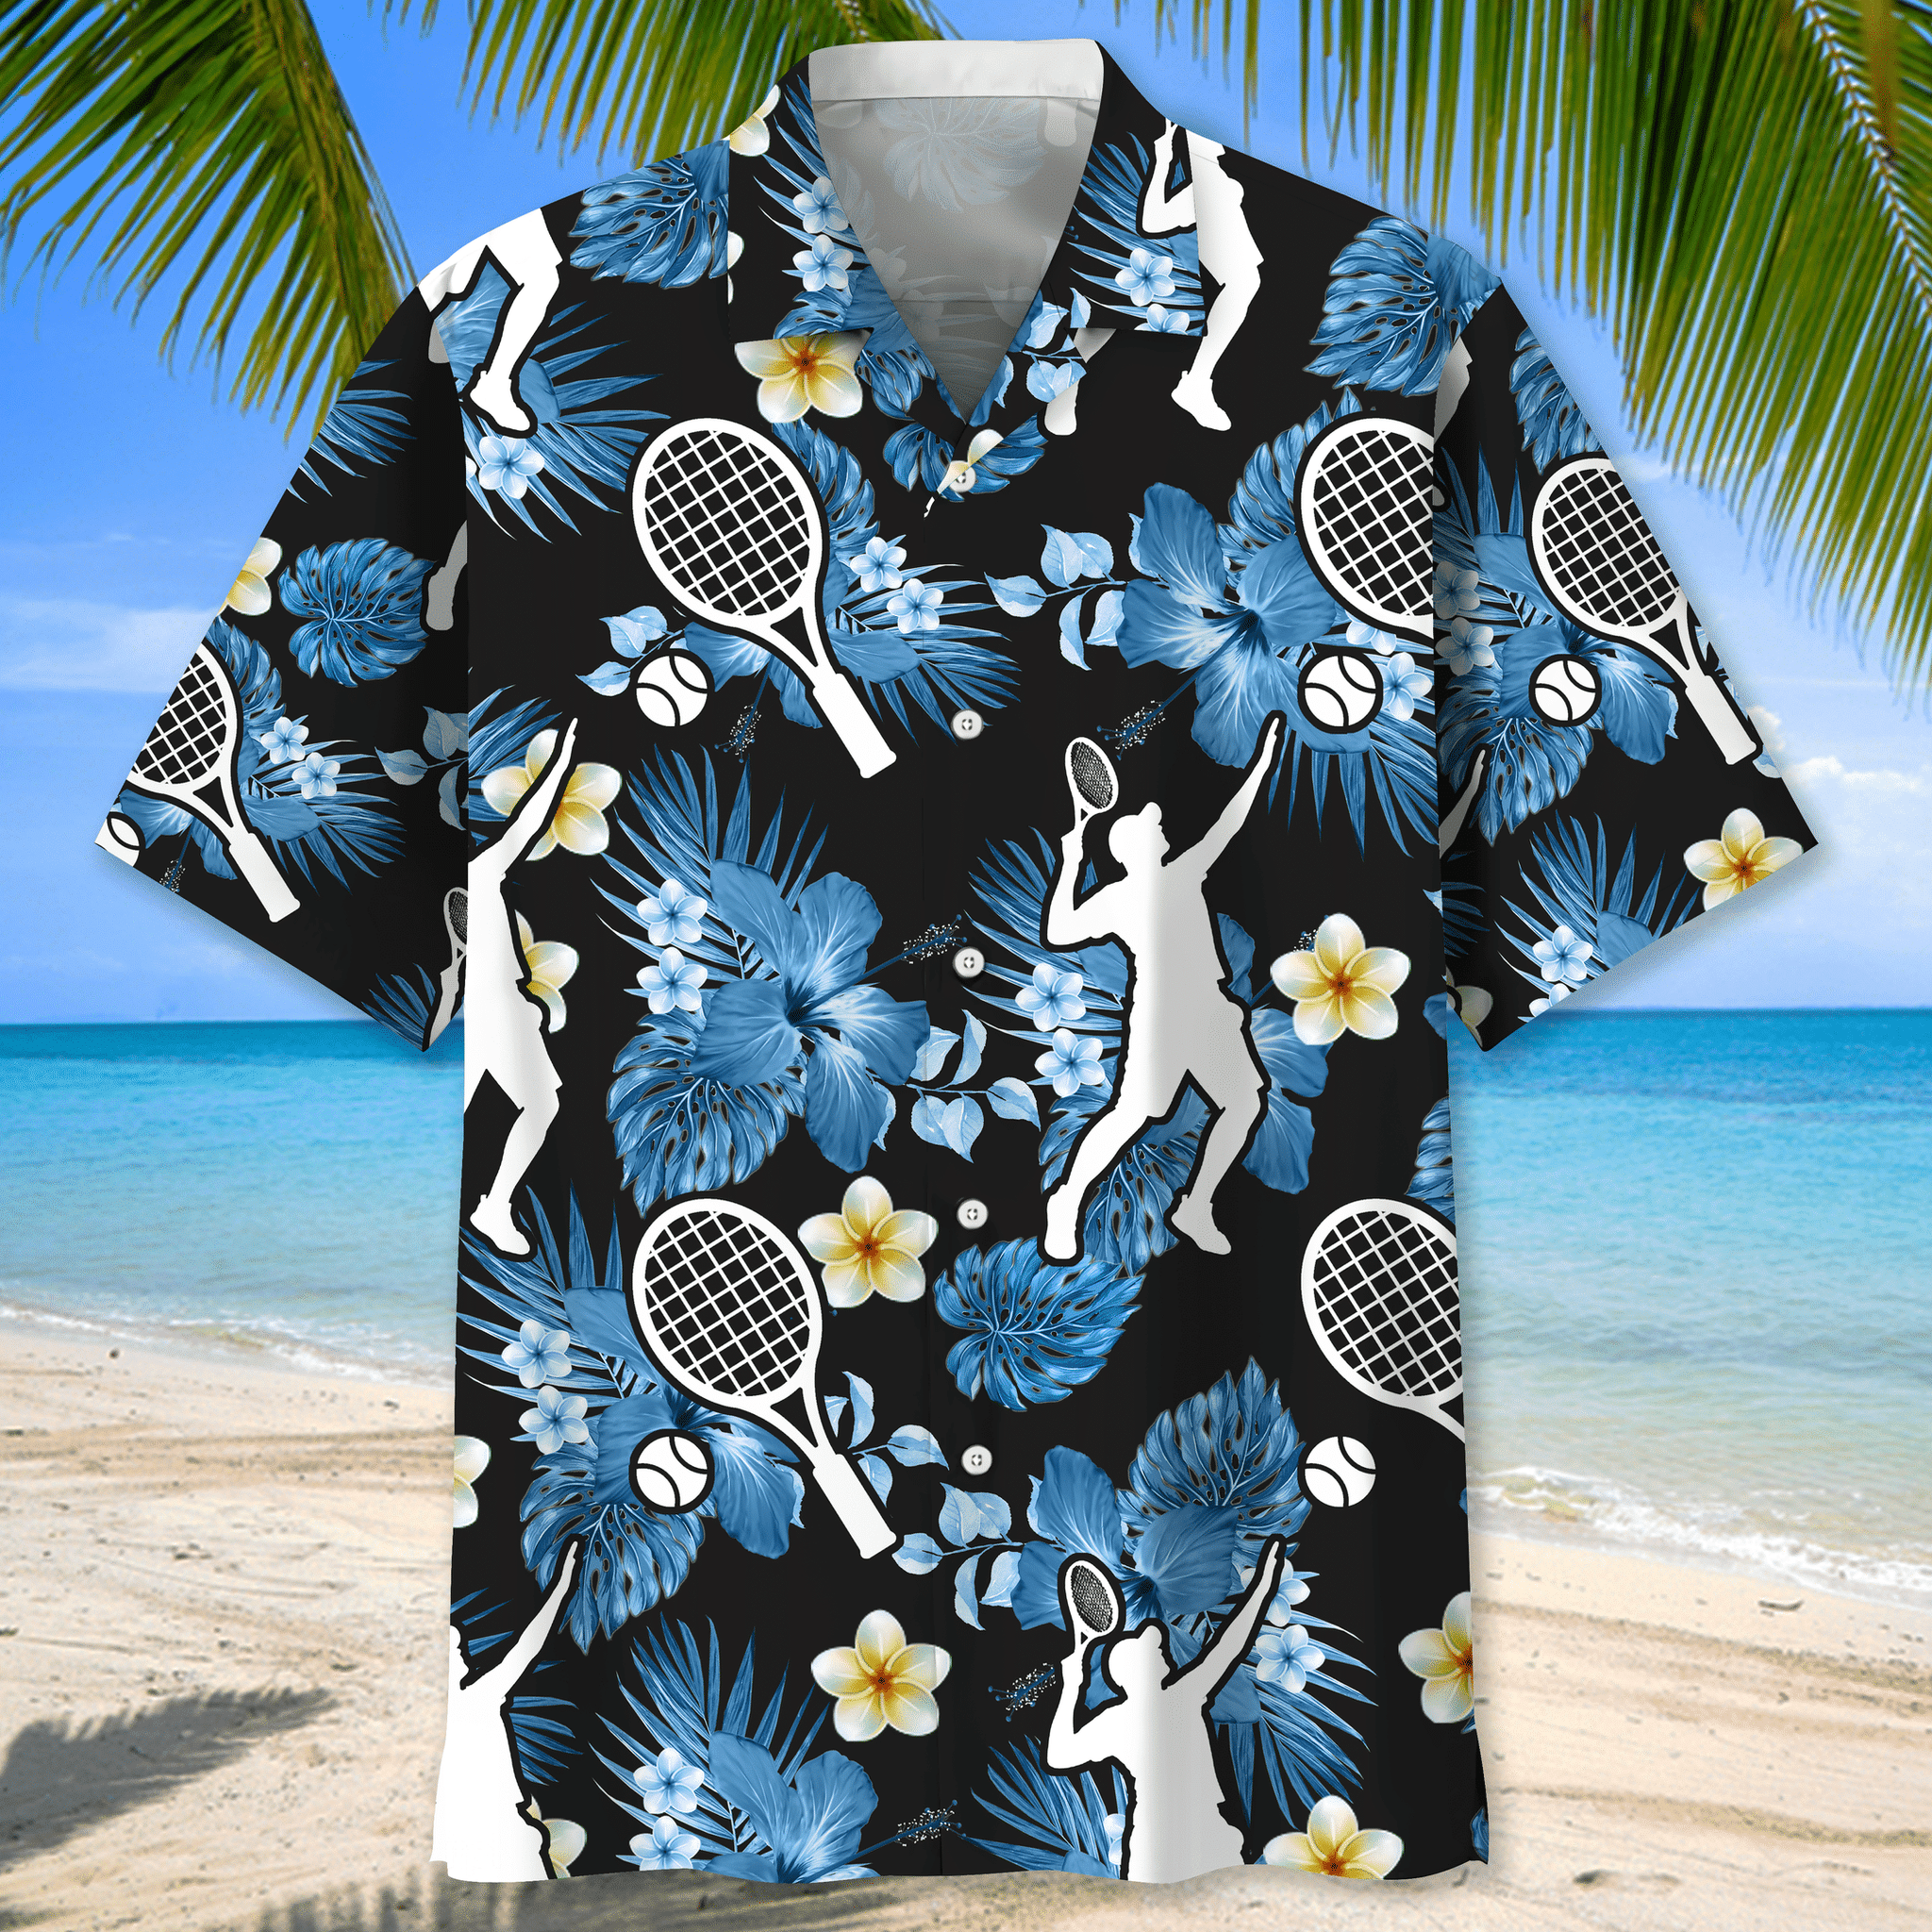 Tennis nature Hawaiian shirt and short 1